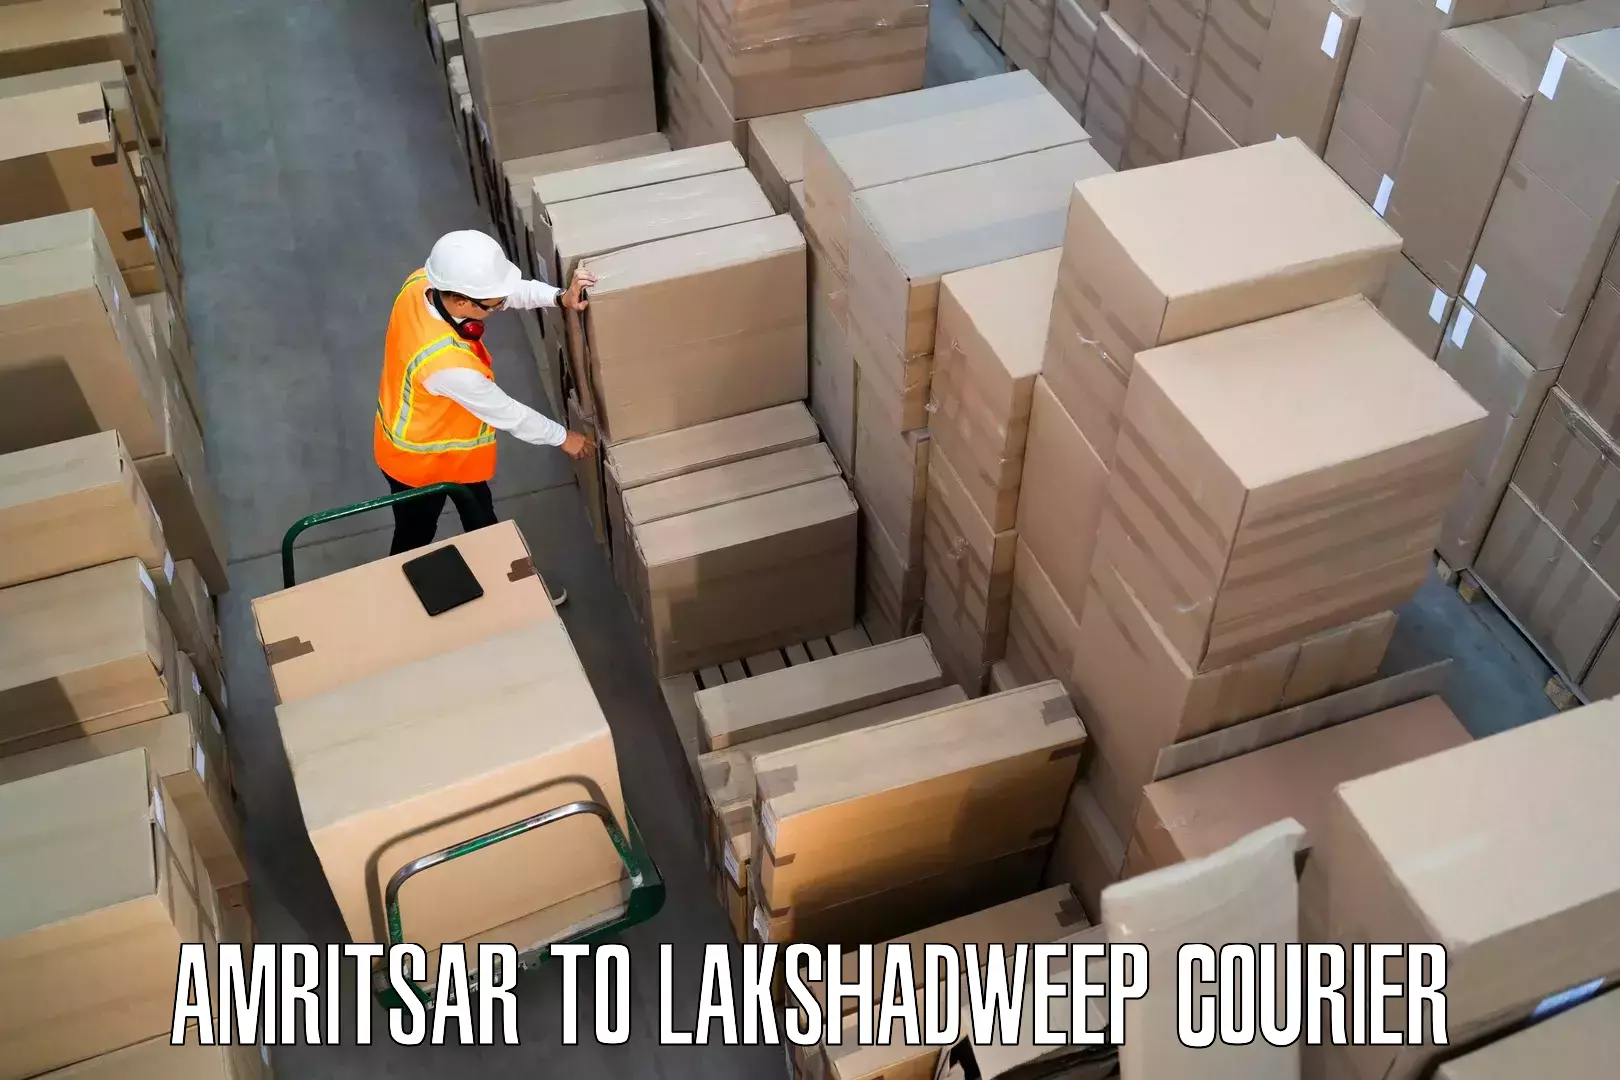 Furniture transport experts Amritsar to Lakshadweep